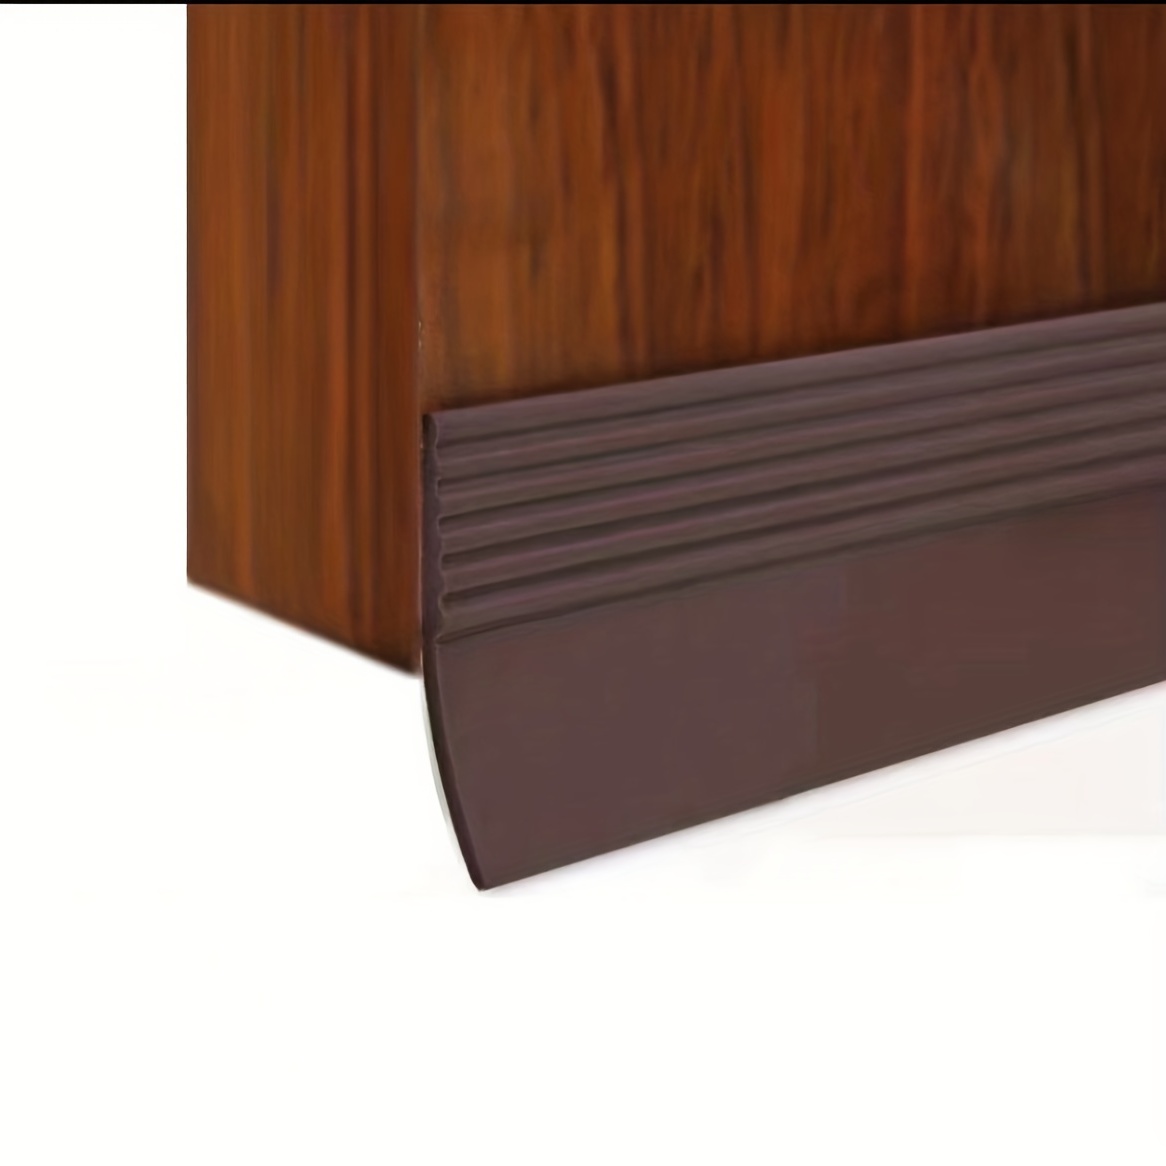 

1pc Self-adhesive Silicone Door Draft Stopper – Door Seal Strip For Under Door Seal Gap Interior & Exterior Doors Weather Stripping Soundproof